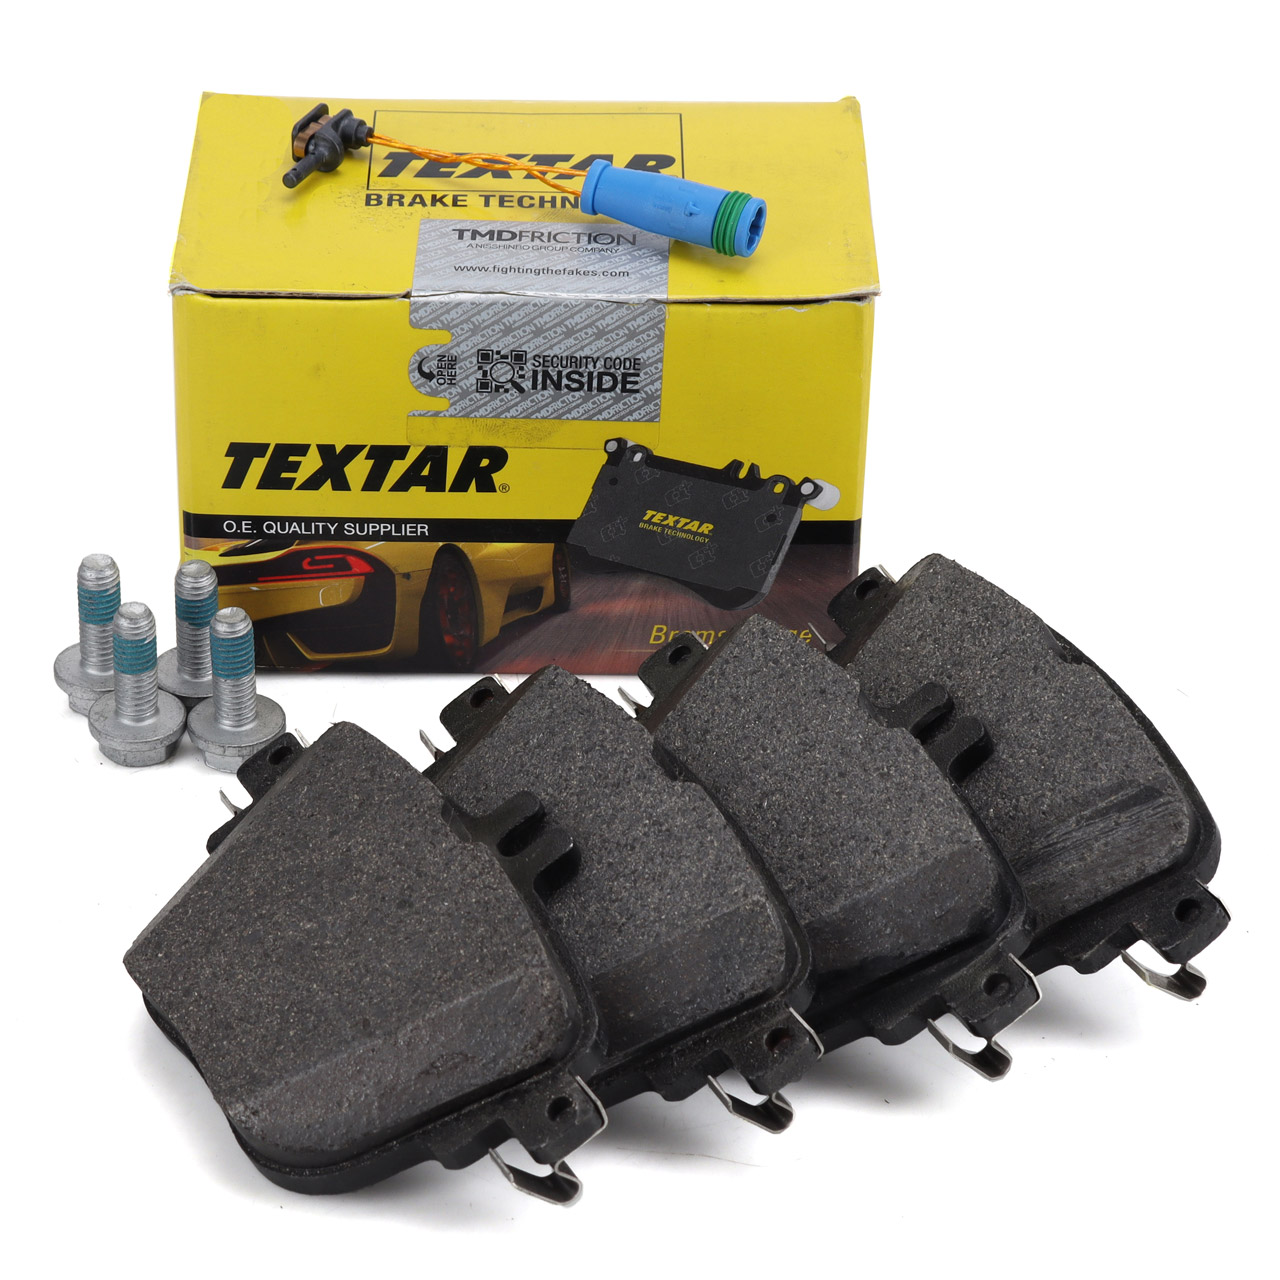 TEXTAR 2279201 Bremsbeläge + Sensor MERCEDES E-Klasse W213 S213 A238 C238 CLS C257 hinten